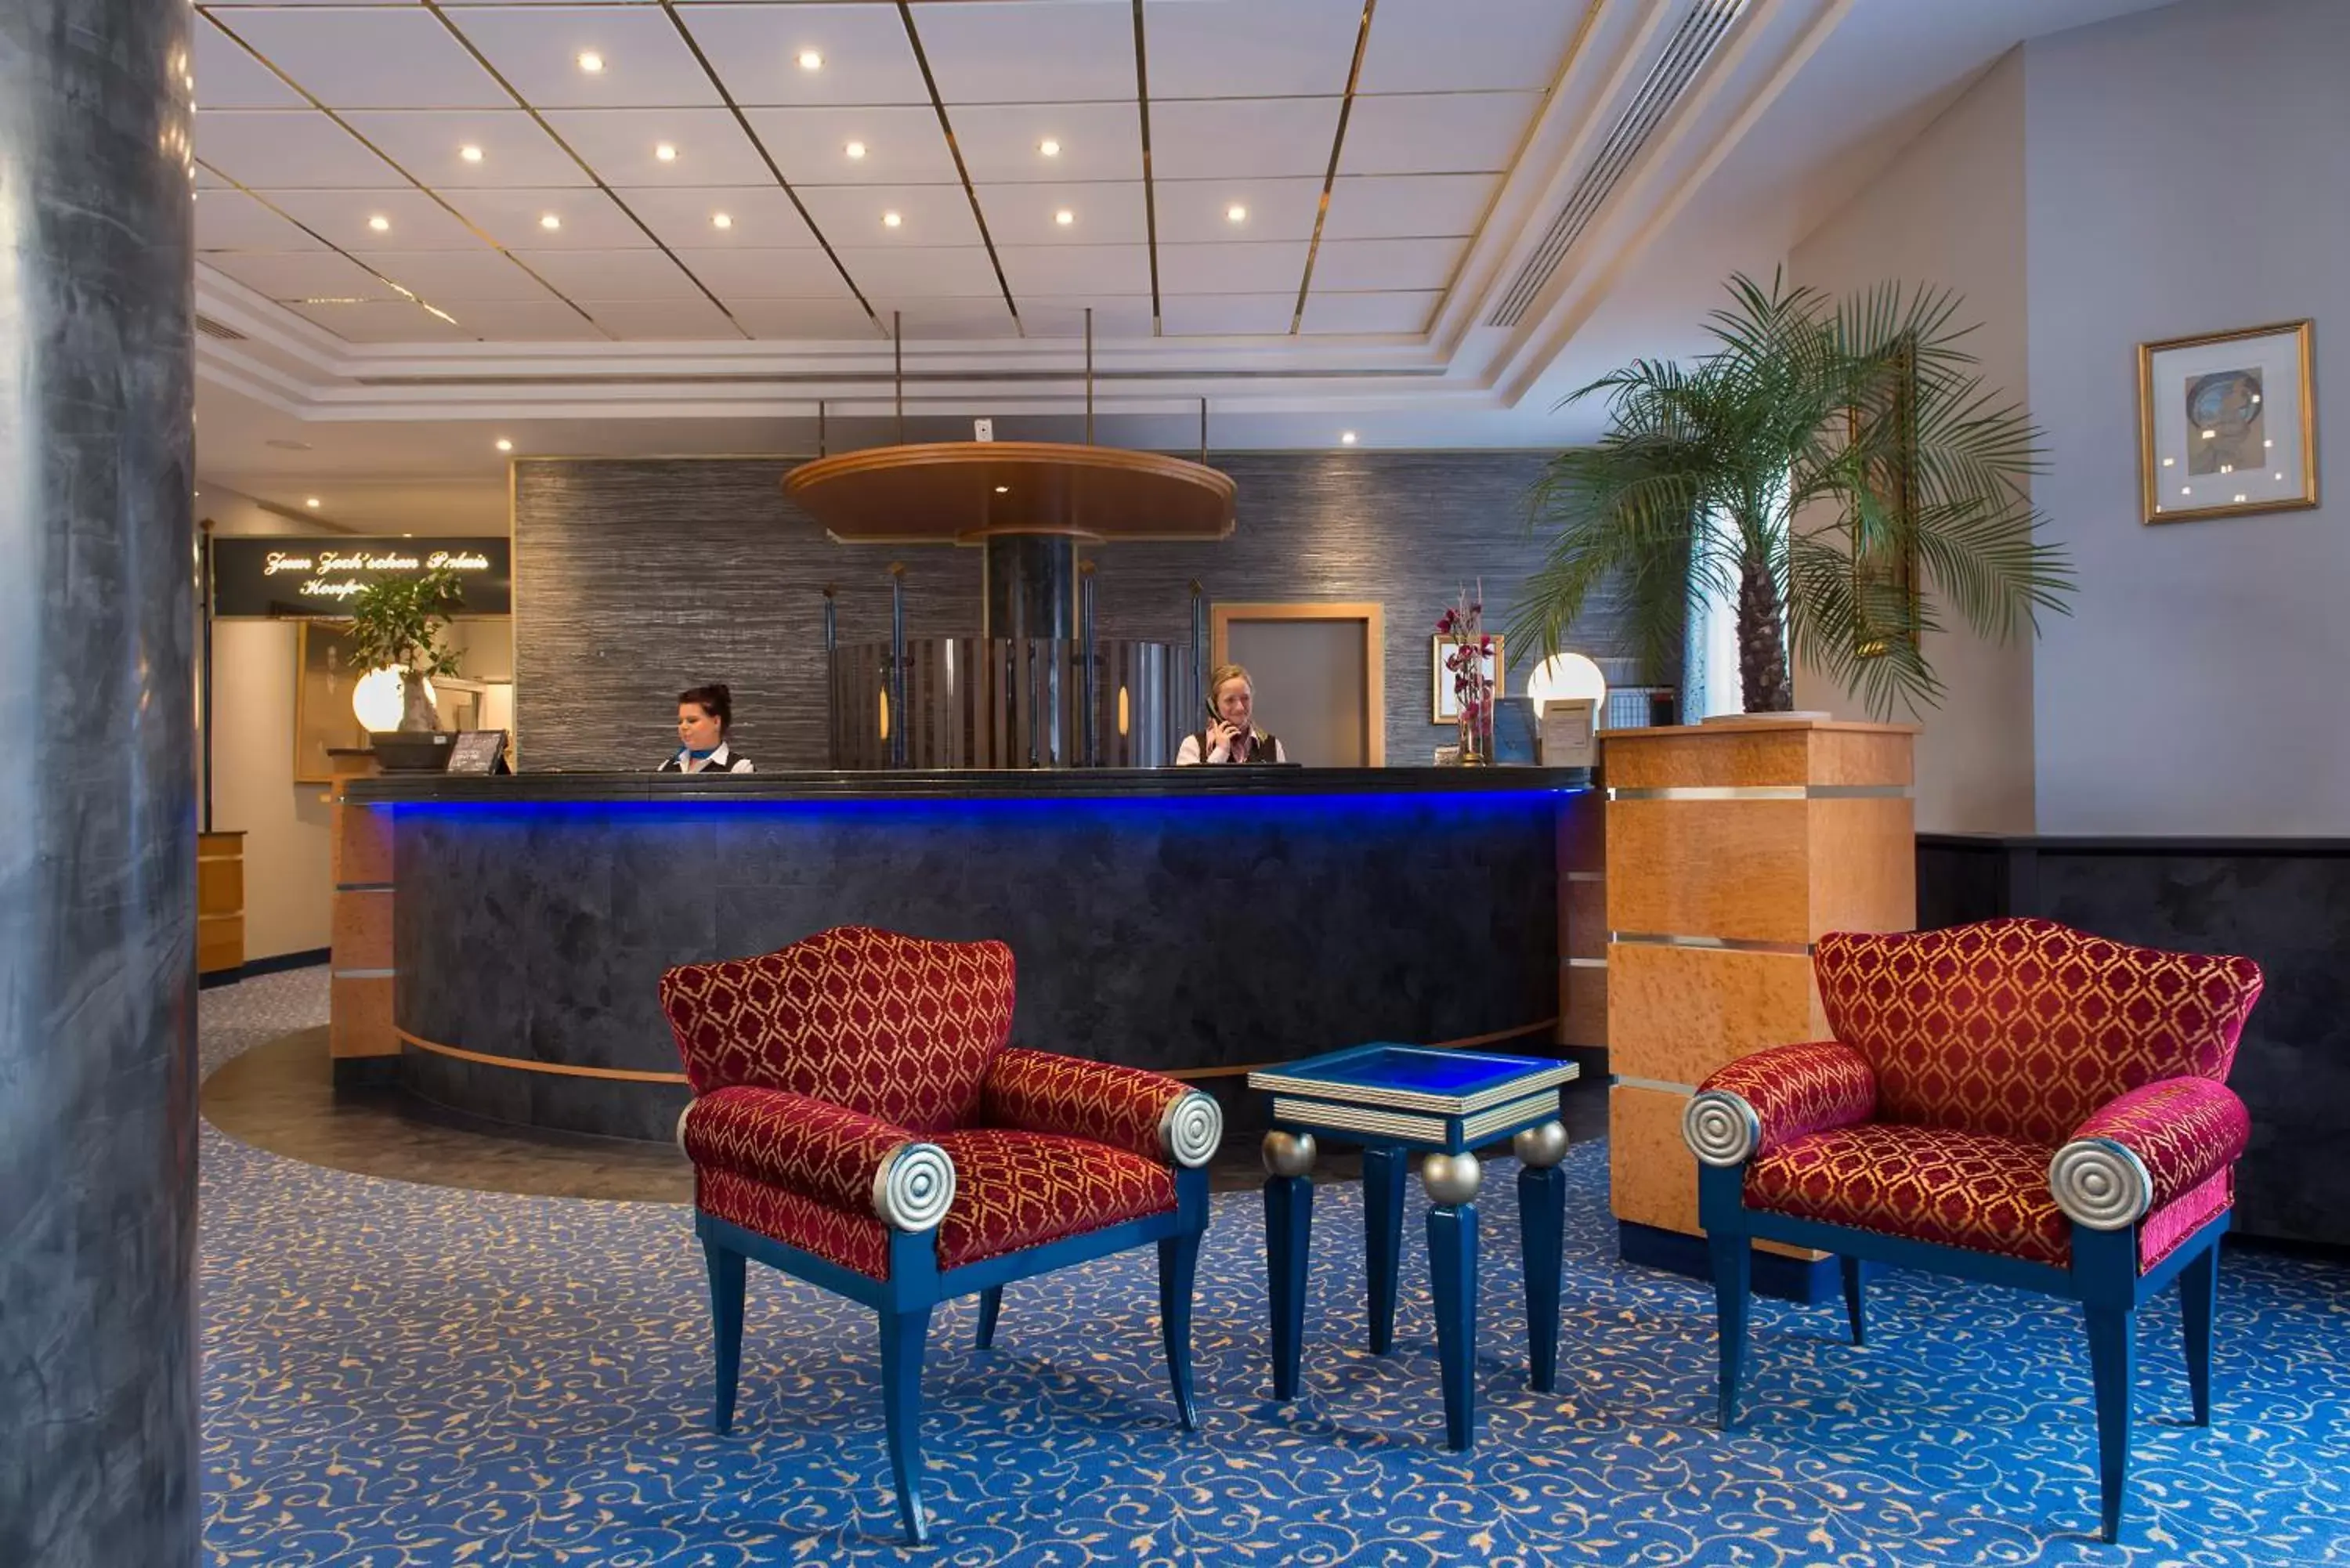 Lobby or reception, Lobby/Reception in Radisson Blu Hotel Halle-Merseburg